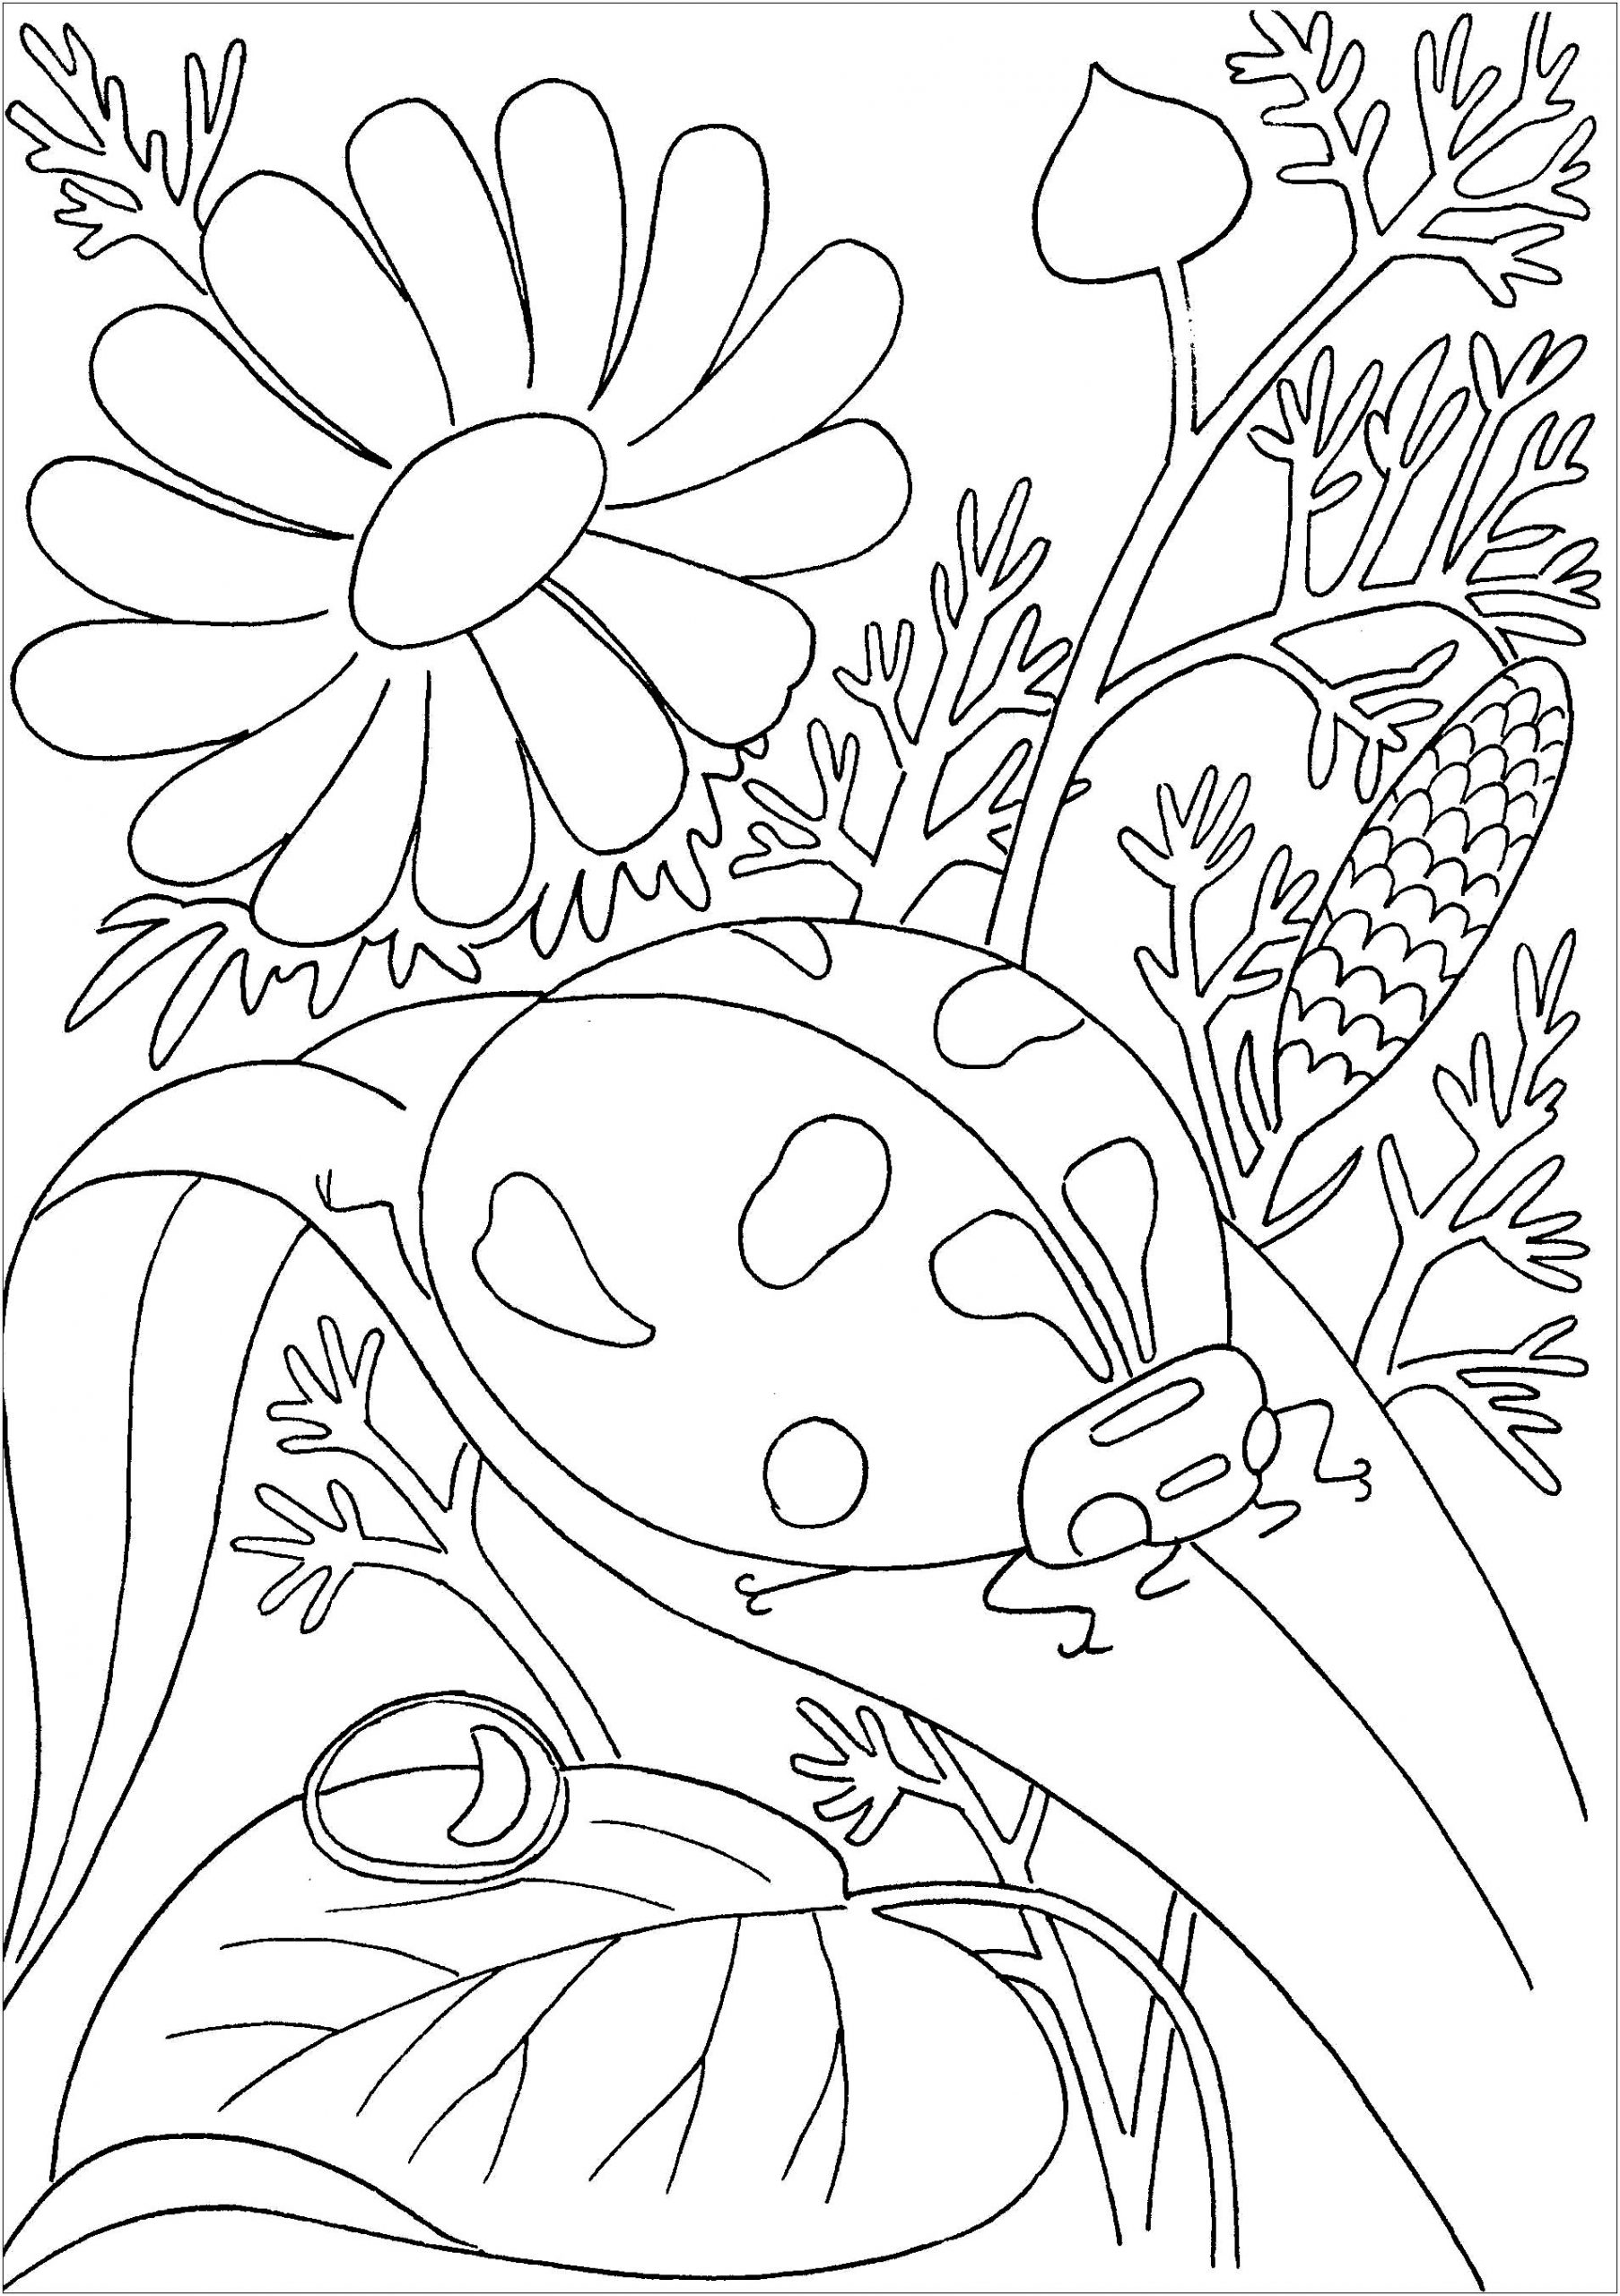 Coccinelles Et Fleurs - Coloriage D&amp;#039;Insectes (Fourmis, Araignées destiné Coloriage Fourmi 